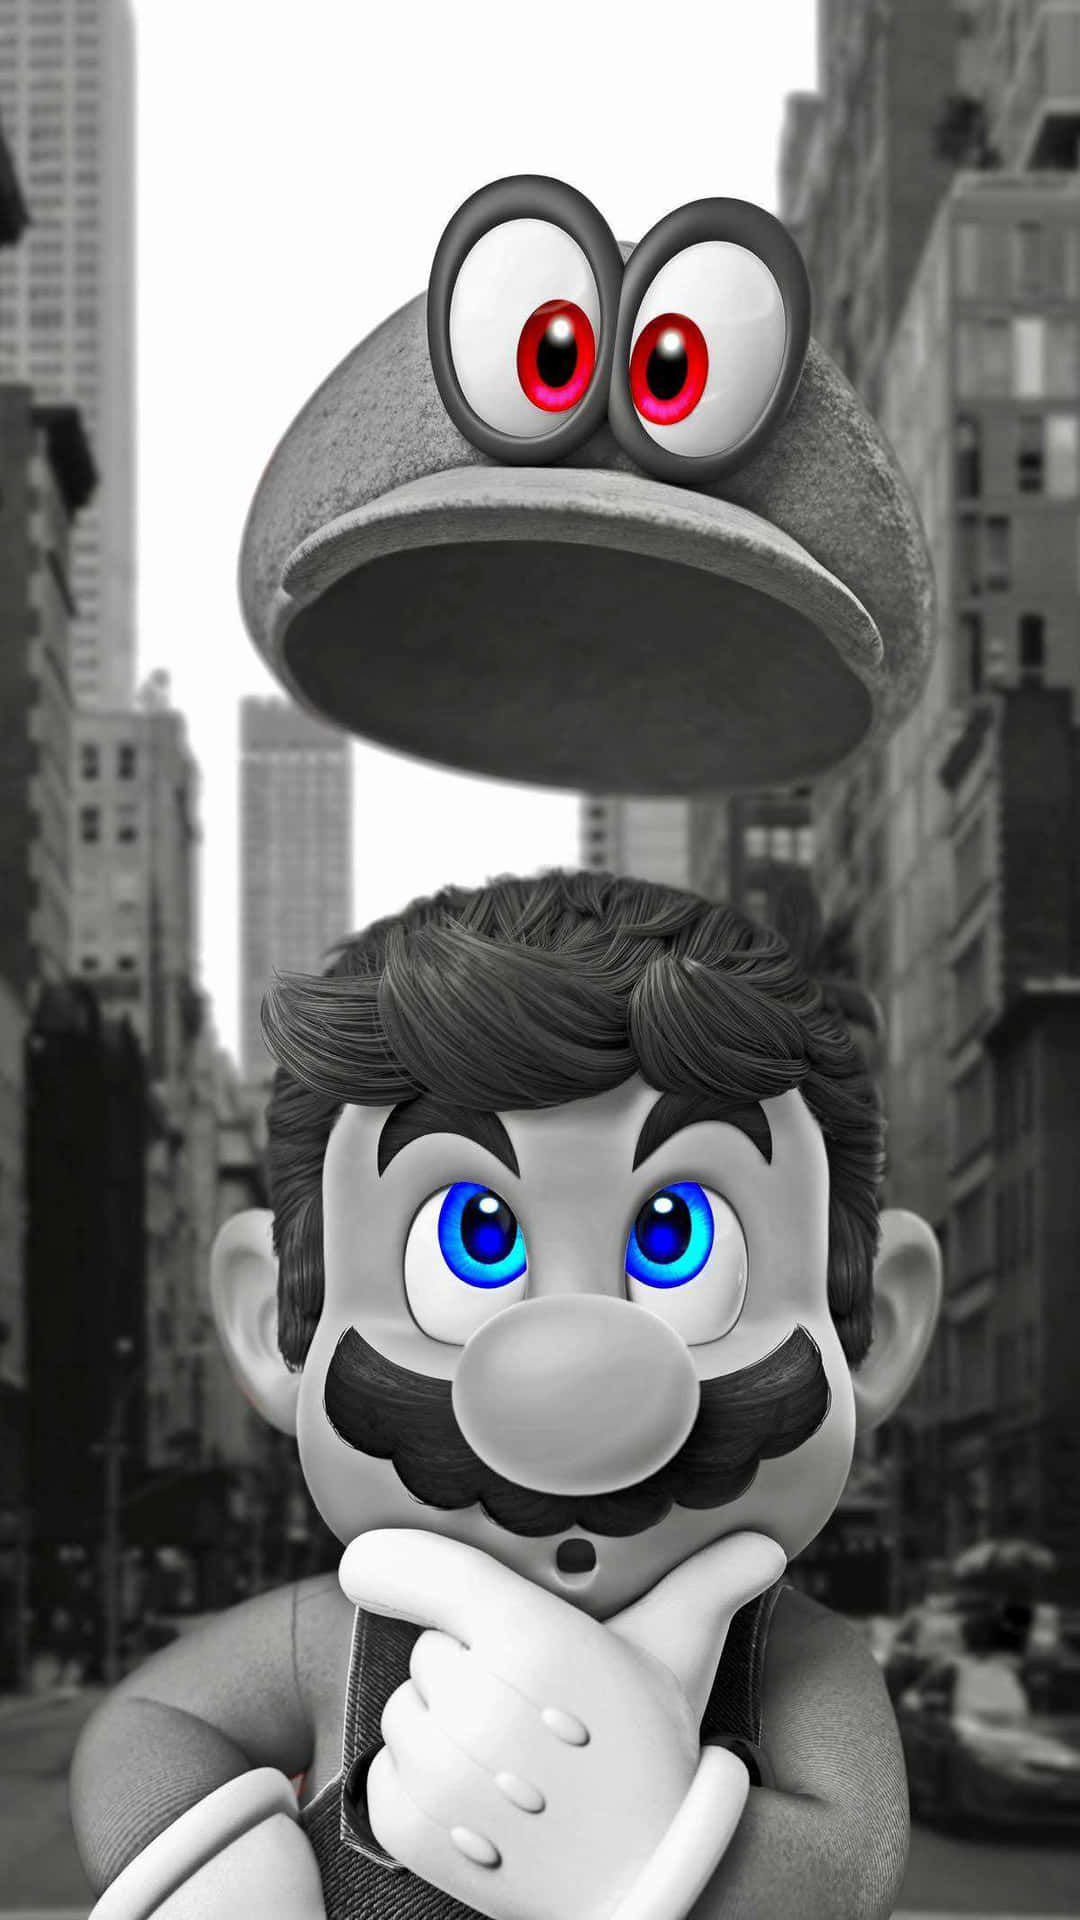 Vivela Emocionante Mundo De Super Mario En Tu Iphone. Fondo de pantalla